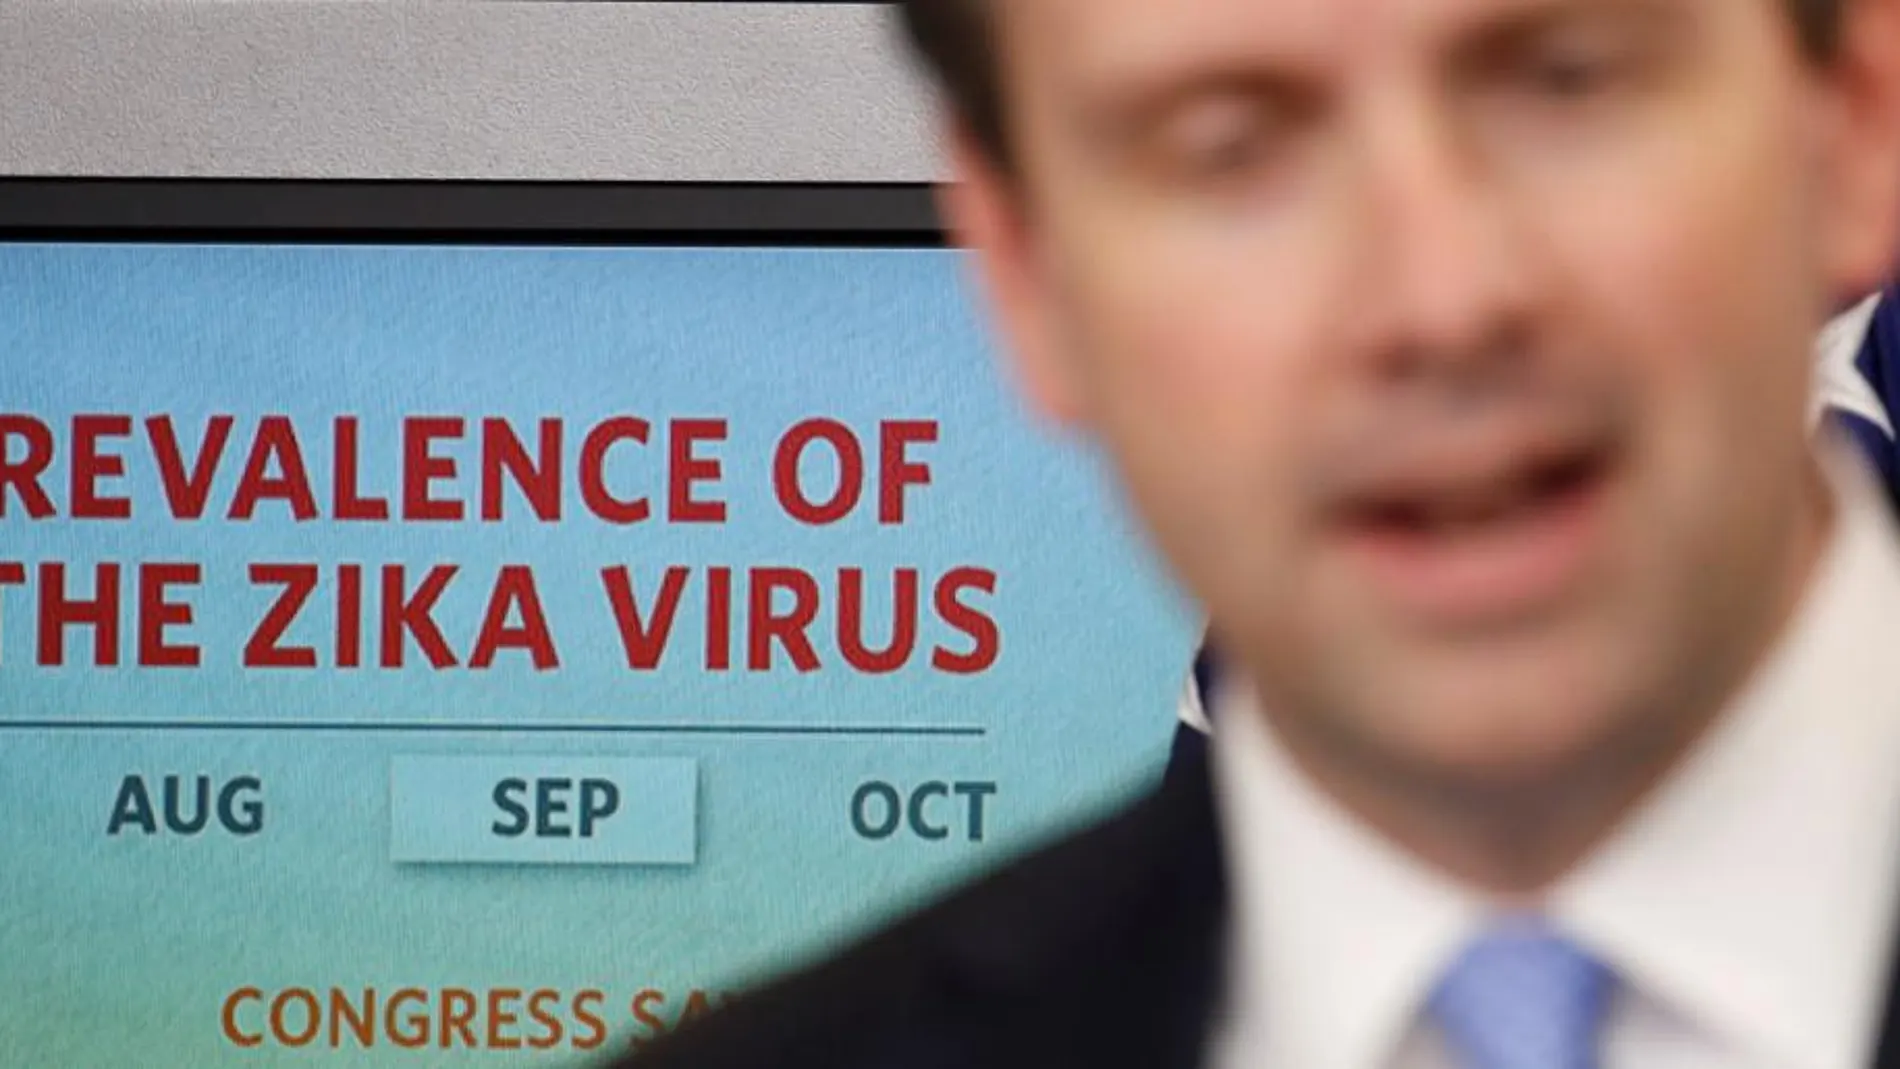 El portavoz de la Casa Blanca, Josh Earnest, ayer miércoles en una conferencia sobre el zika